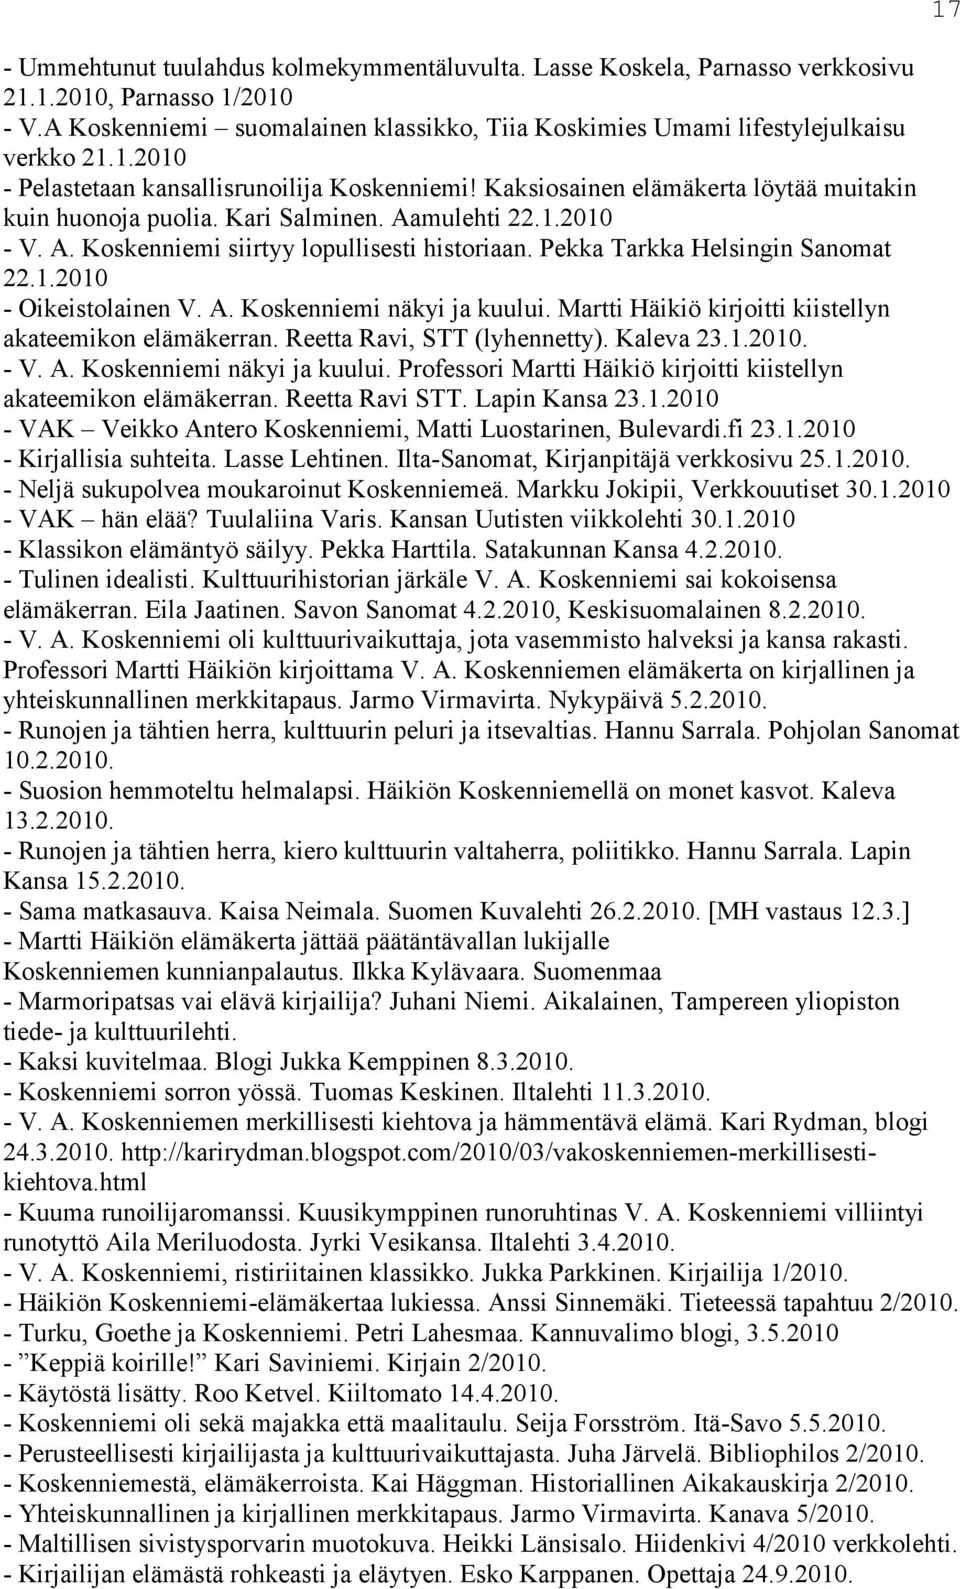 A. Koskenniemi näkyi ja kuului. Martti Häikiö kirjoitti kiistellyn akateemikon elämäkerran. Reetta Ravi, STT (lyhennetty). Kaleva 23.1.2010. - V. A. Koskenniemi näkyi ja kuului. Professori Martti Häikiö kirjoitti kiistellyn akateemikon elämäkerran.